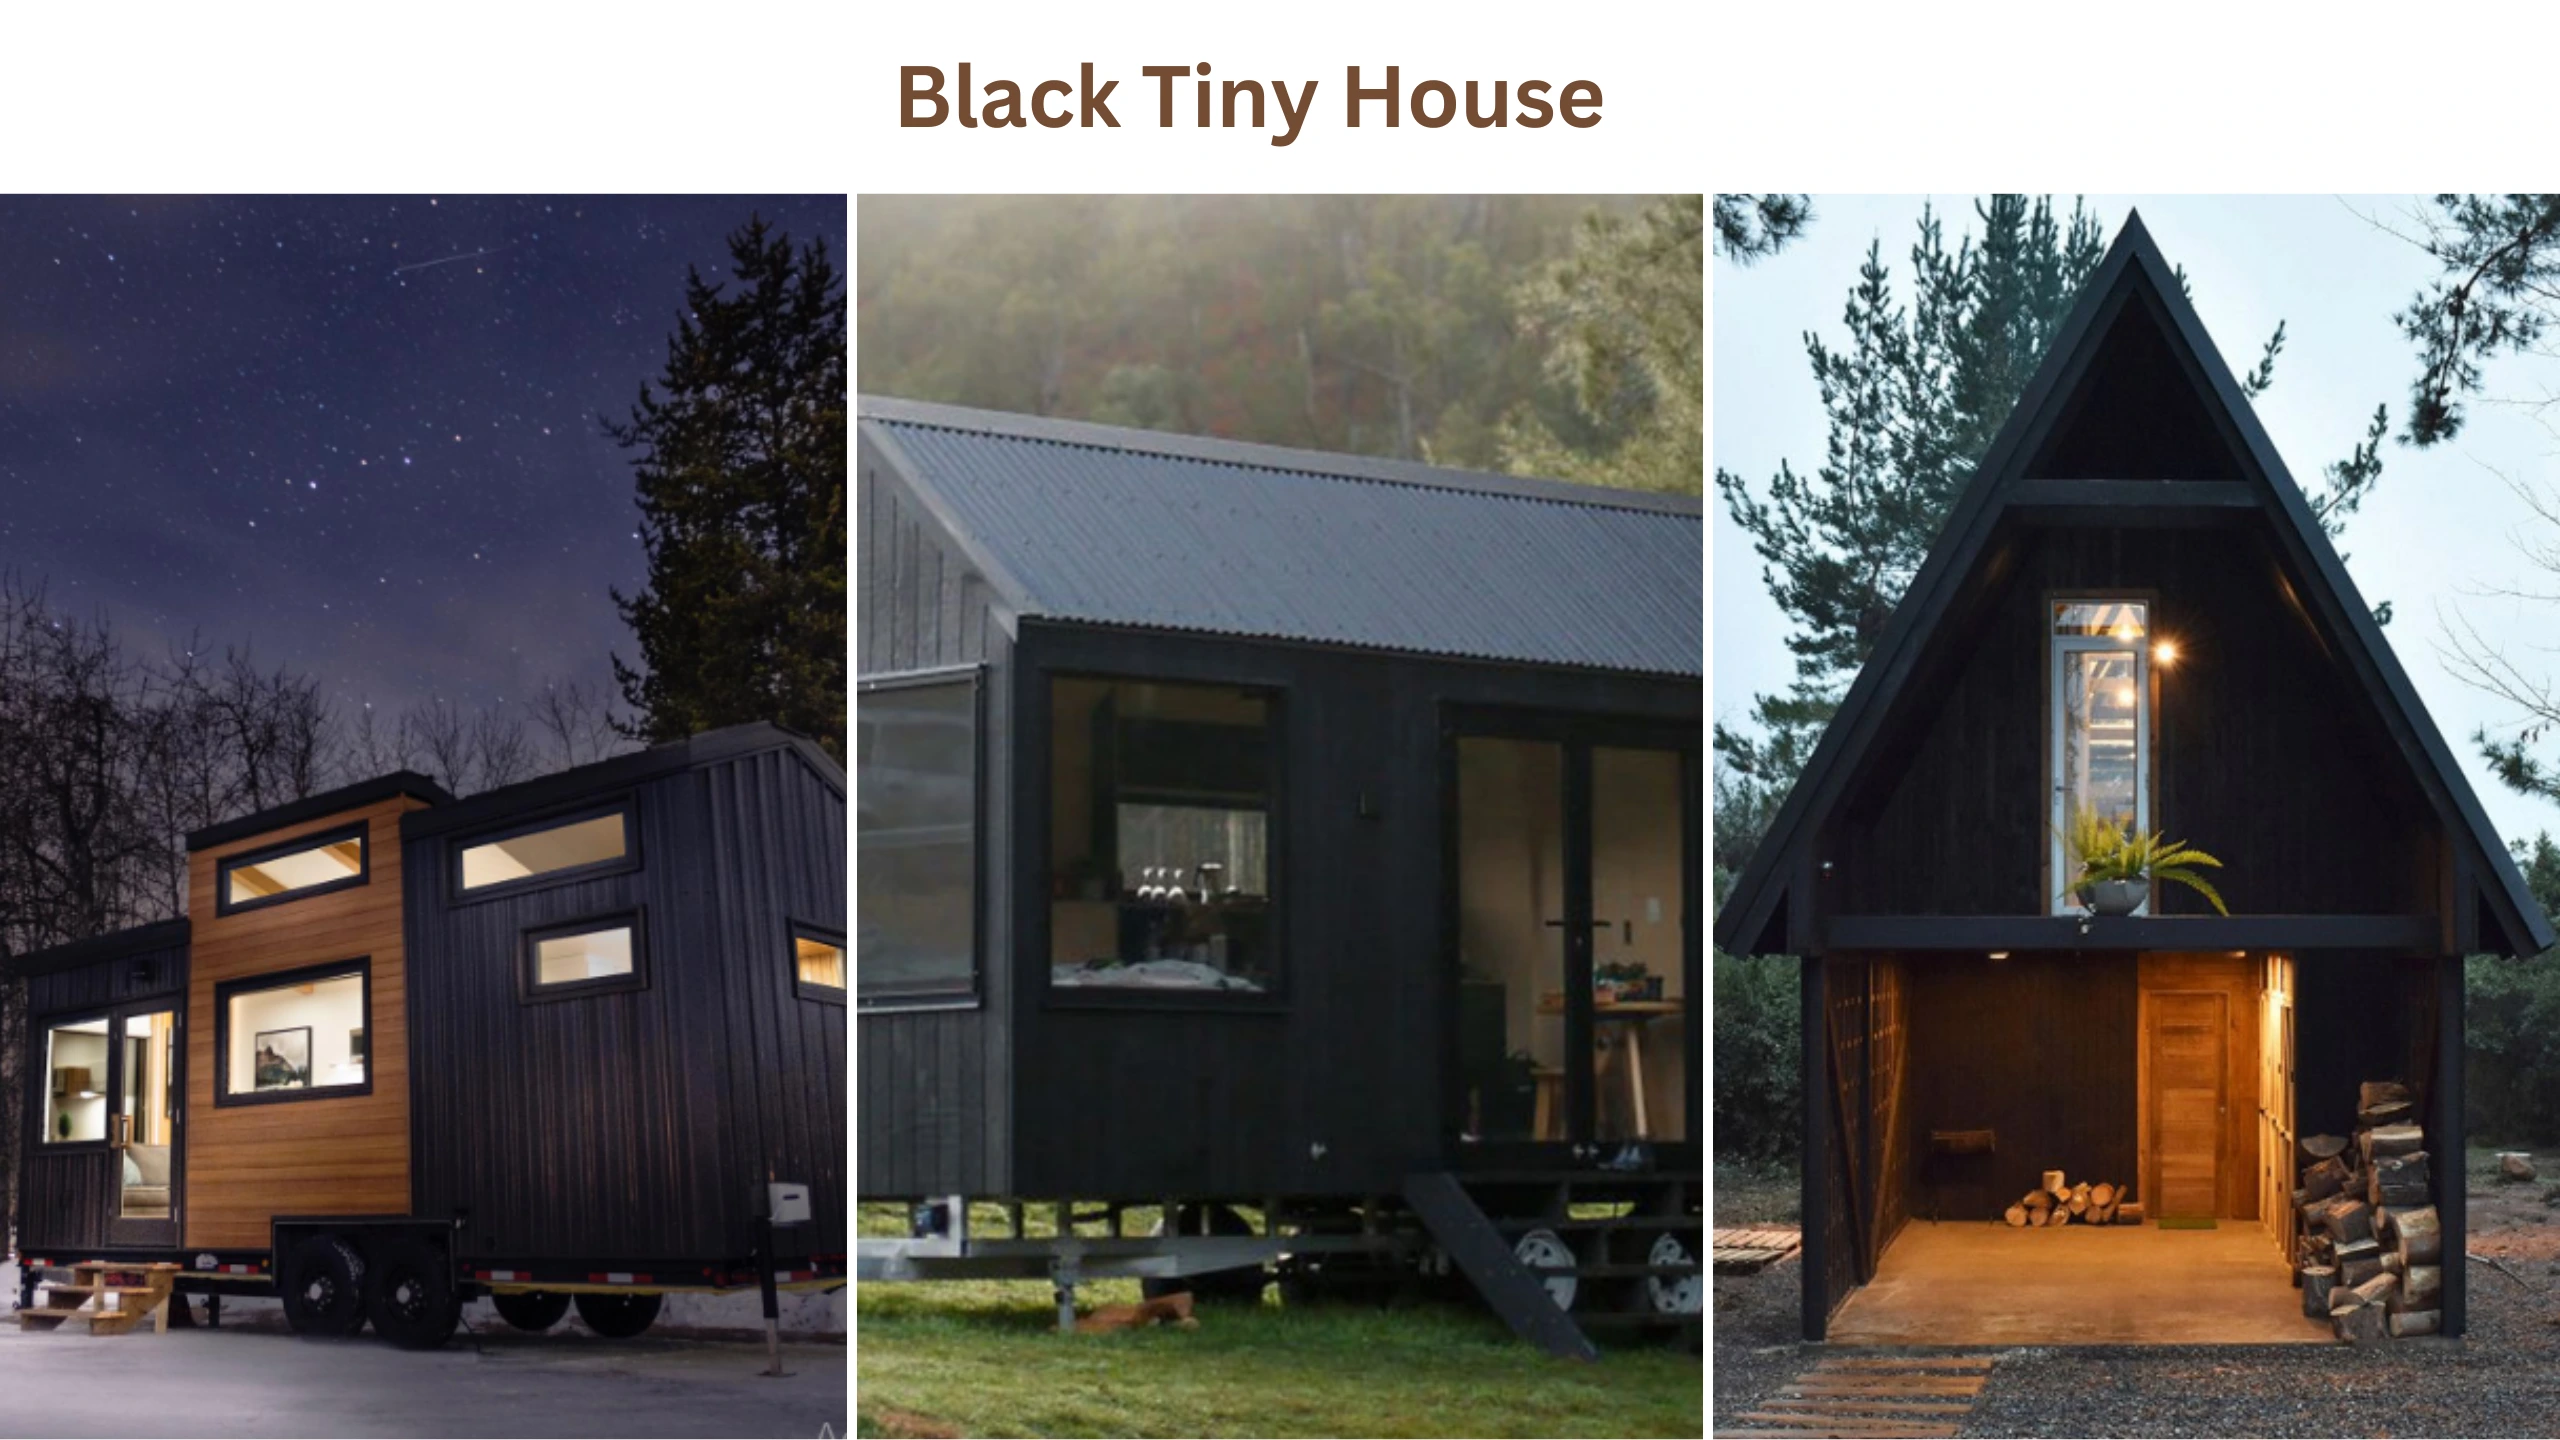 Black tiny house